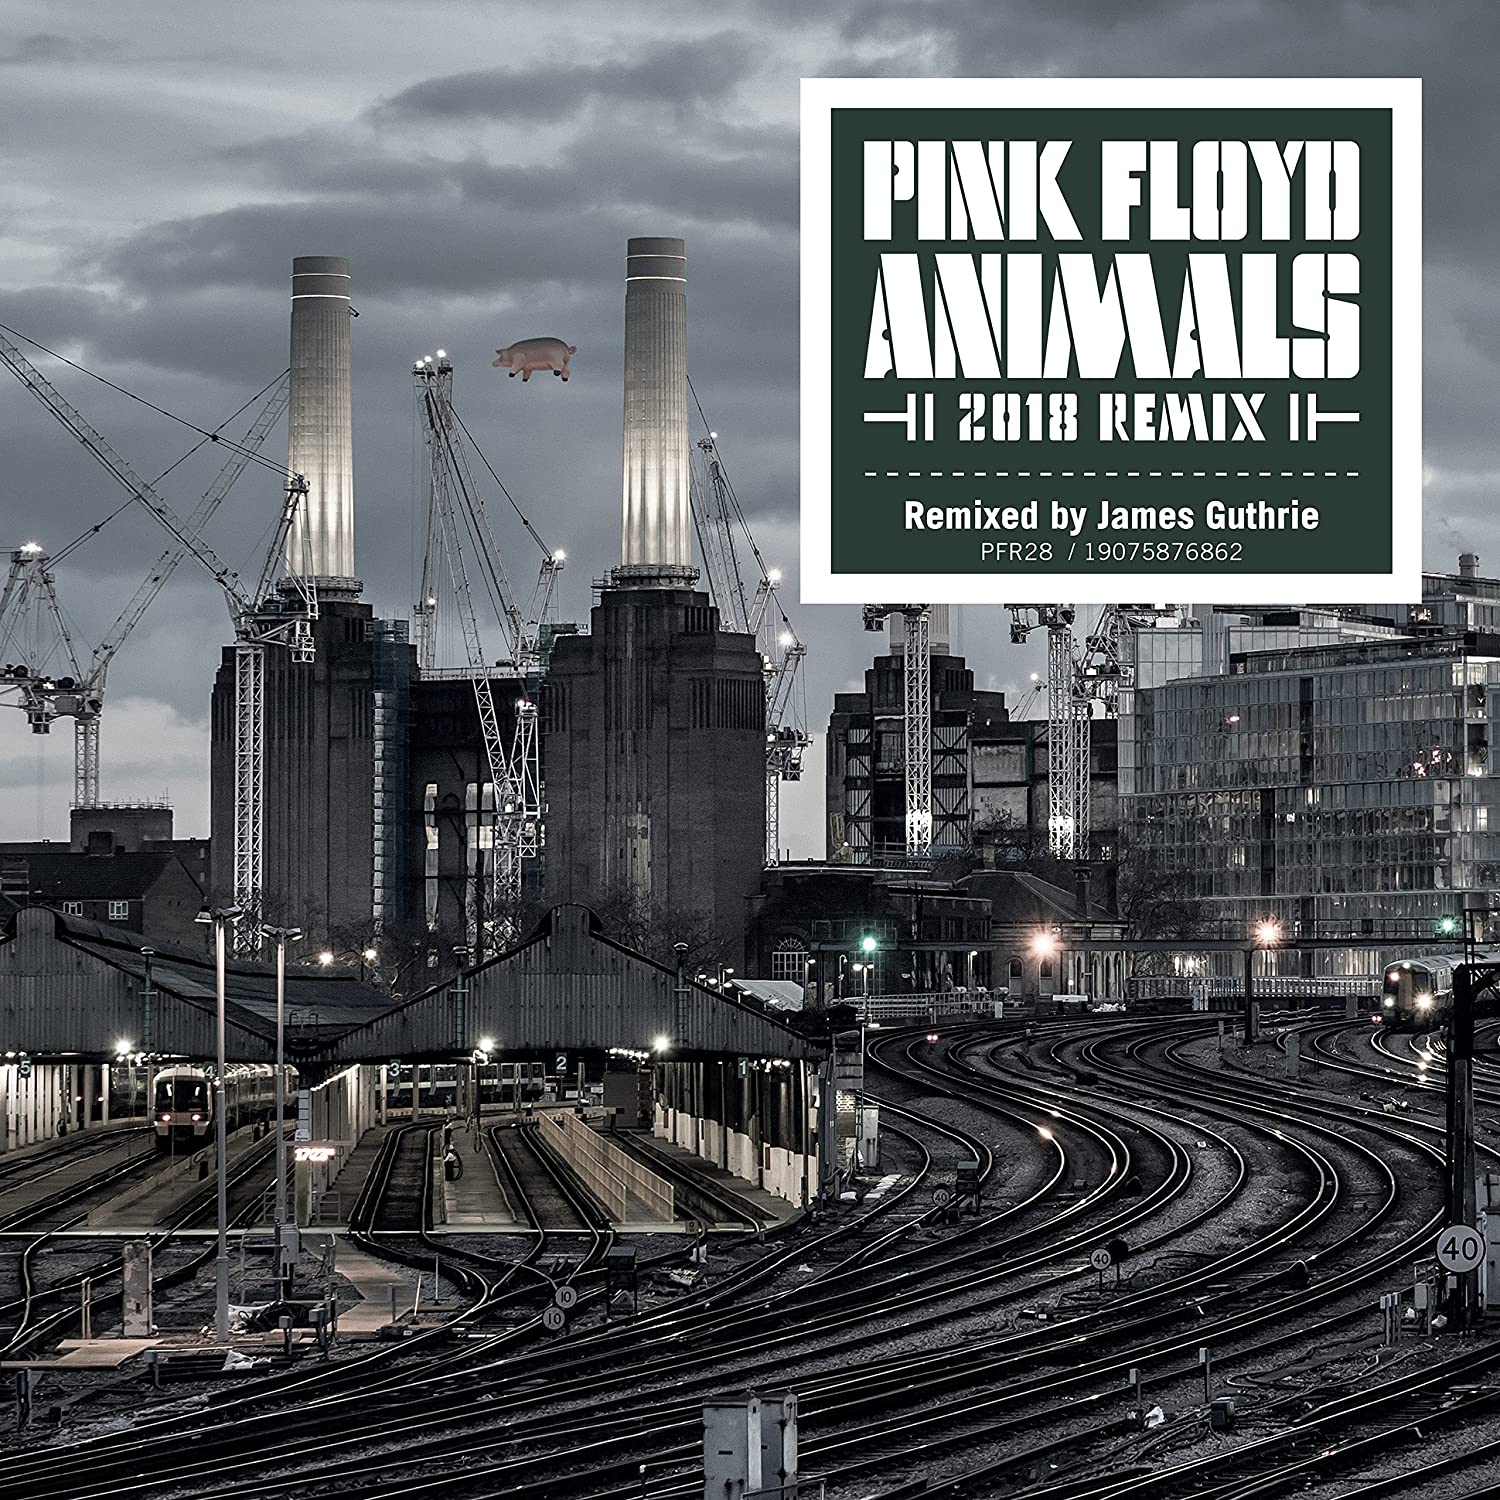 PINK FLOYD - ANIMALS (2018 REMIX) LP